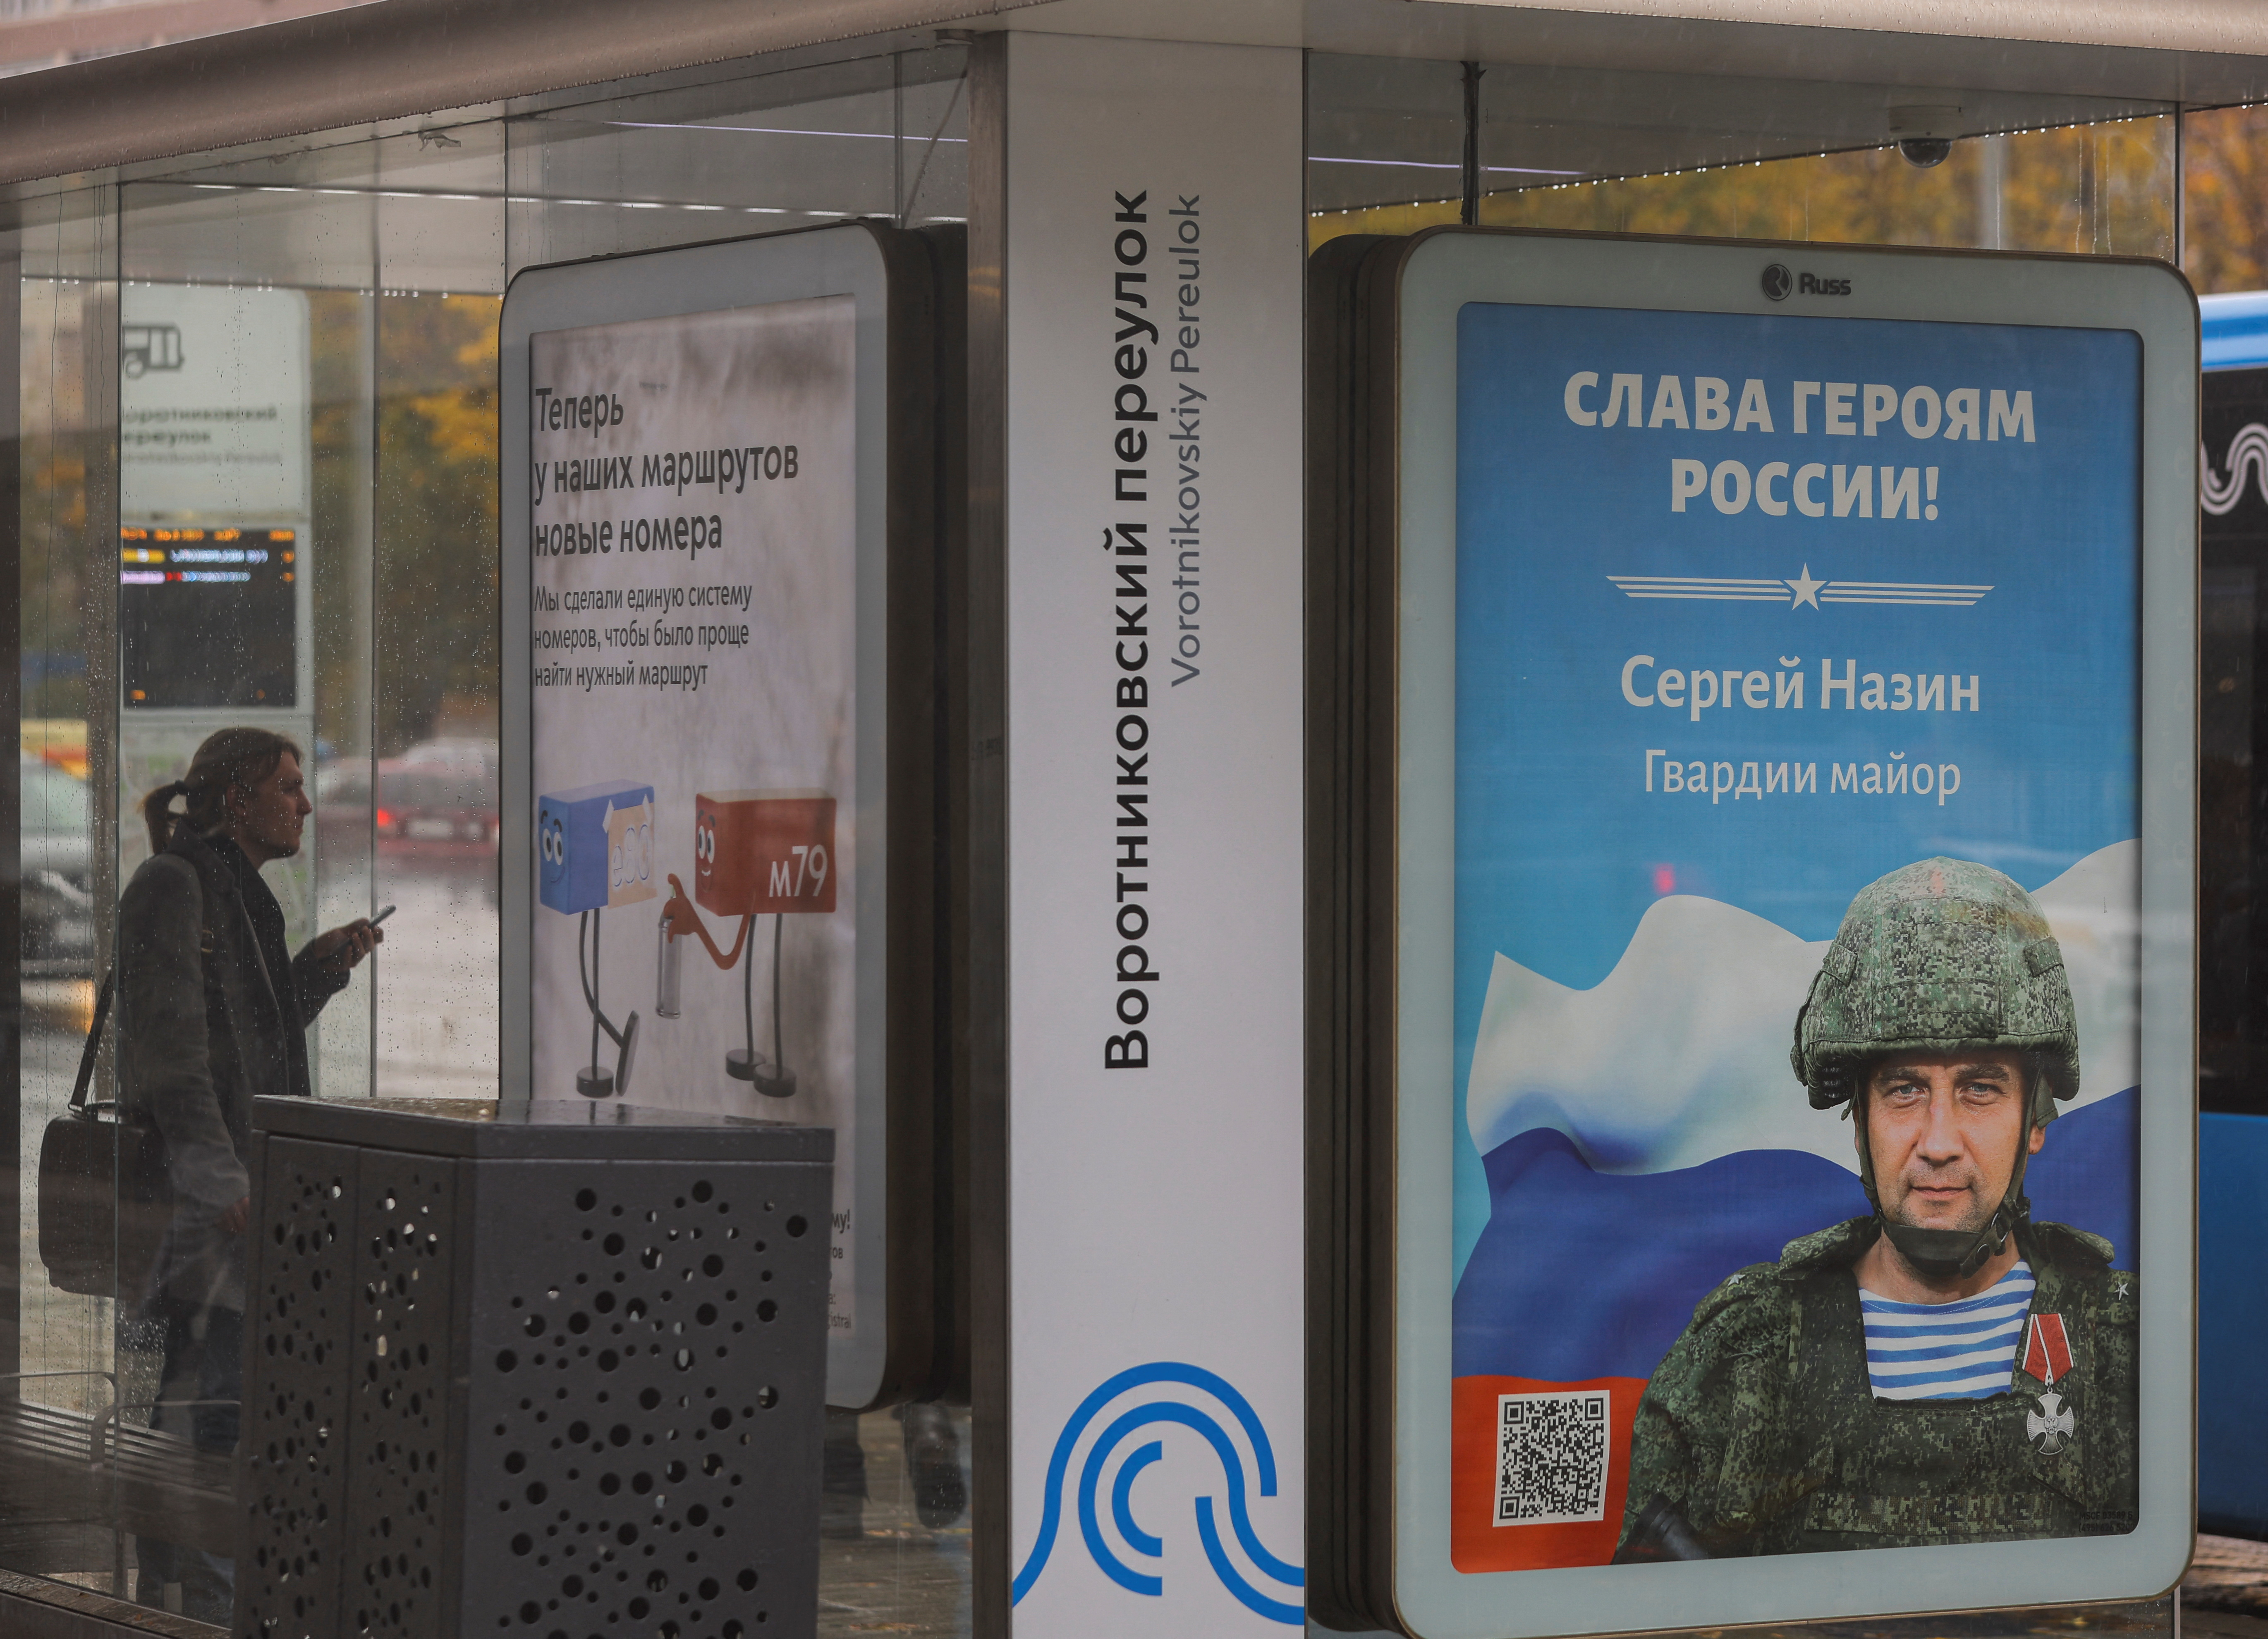 Una persona espera un autobús en Moscú mientras puede verse una imagen de un soldado ruso con el eslogan "Gloria a los héroes de Rusia". La guerra comienza a sentirse en las calles de la capital rusa (Reuters)